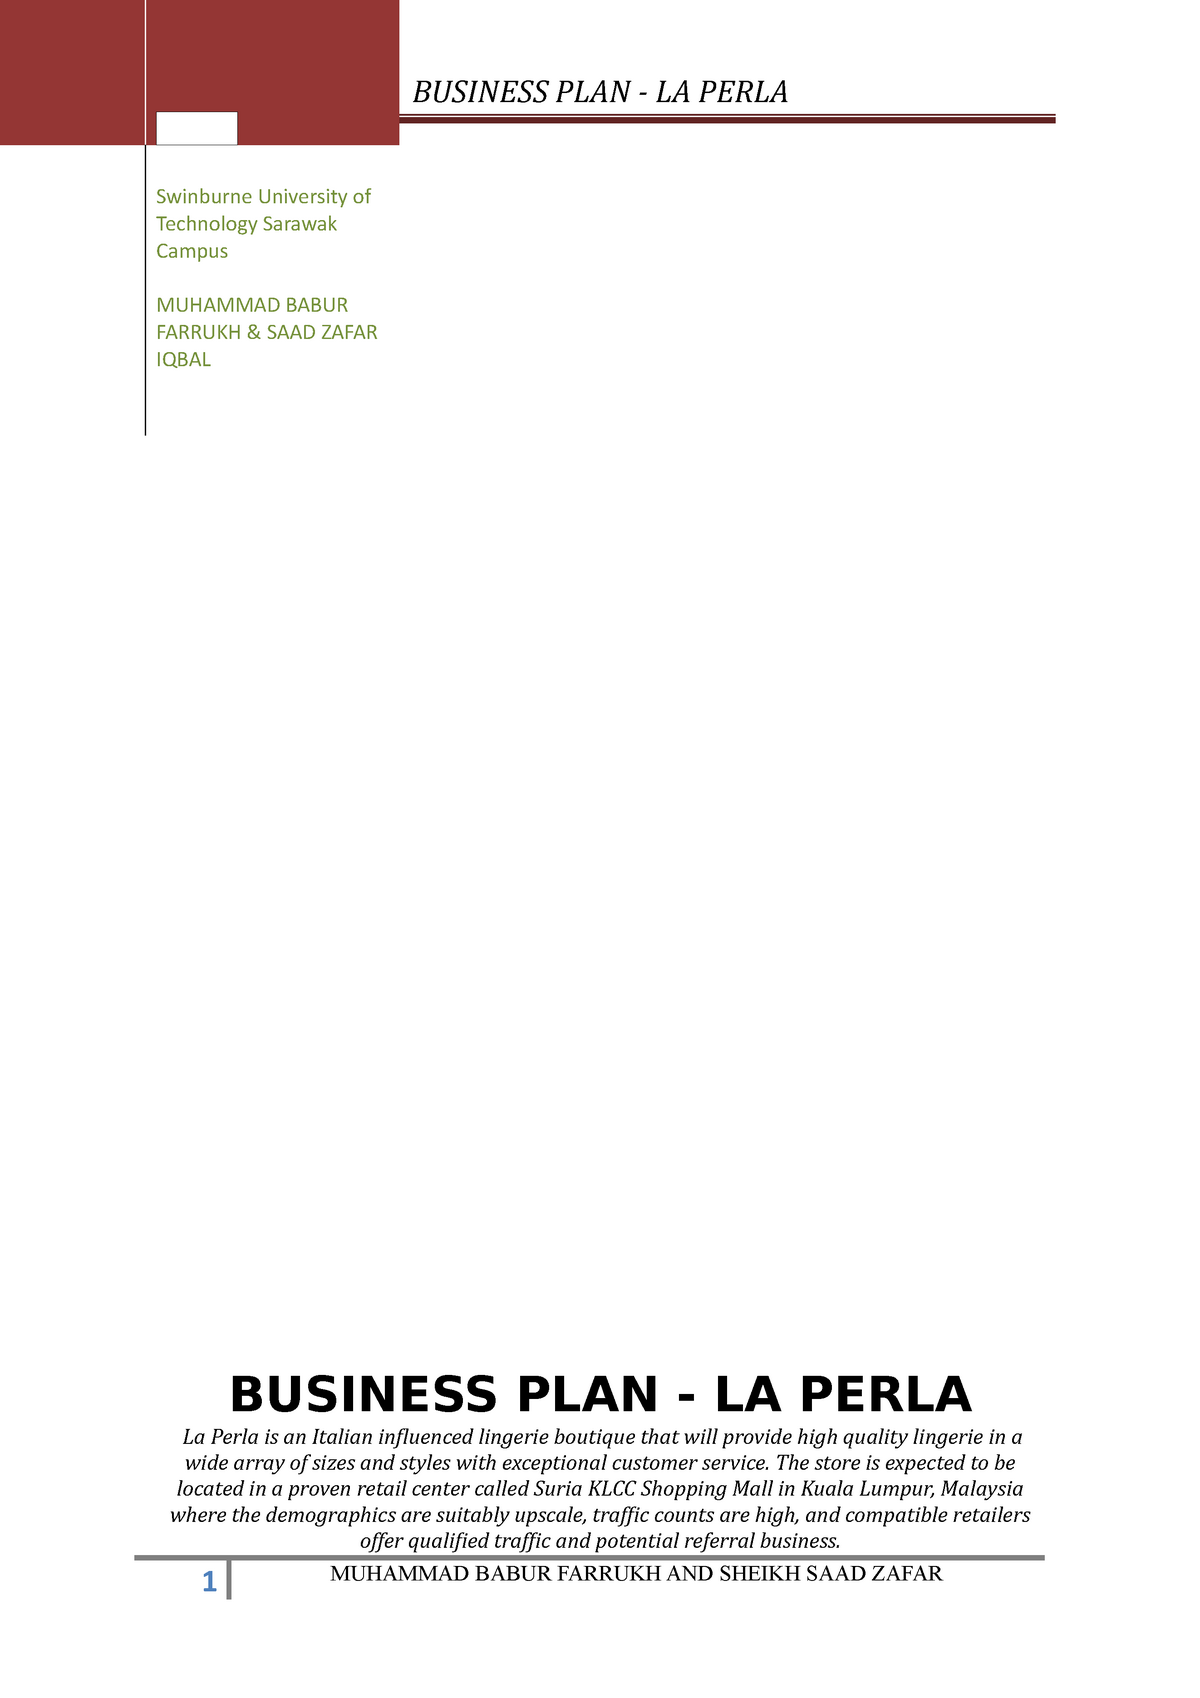 1 Lingerie Shop Business-Plan-La-Perla - BUSINESS PLAN - LA PERLA